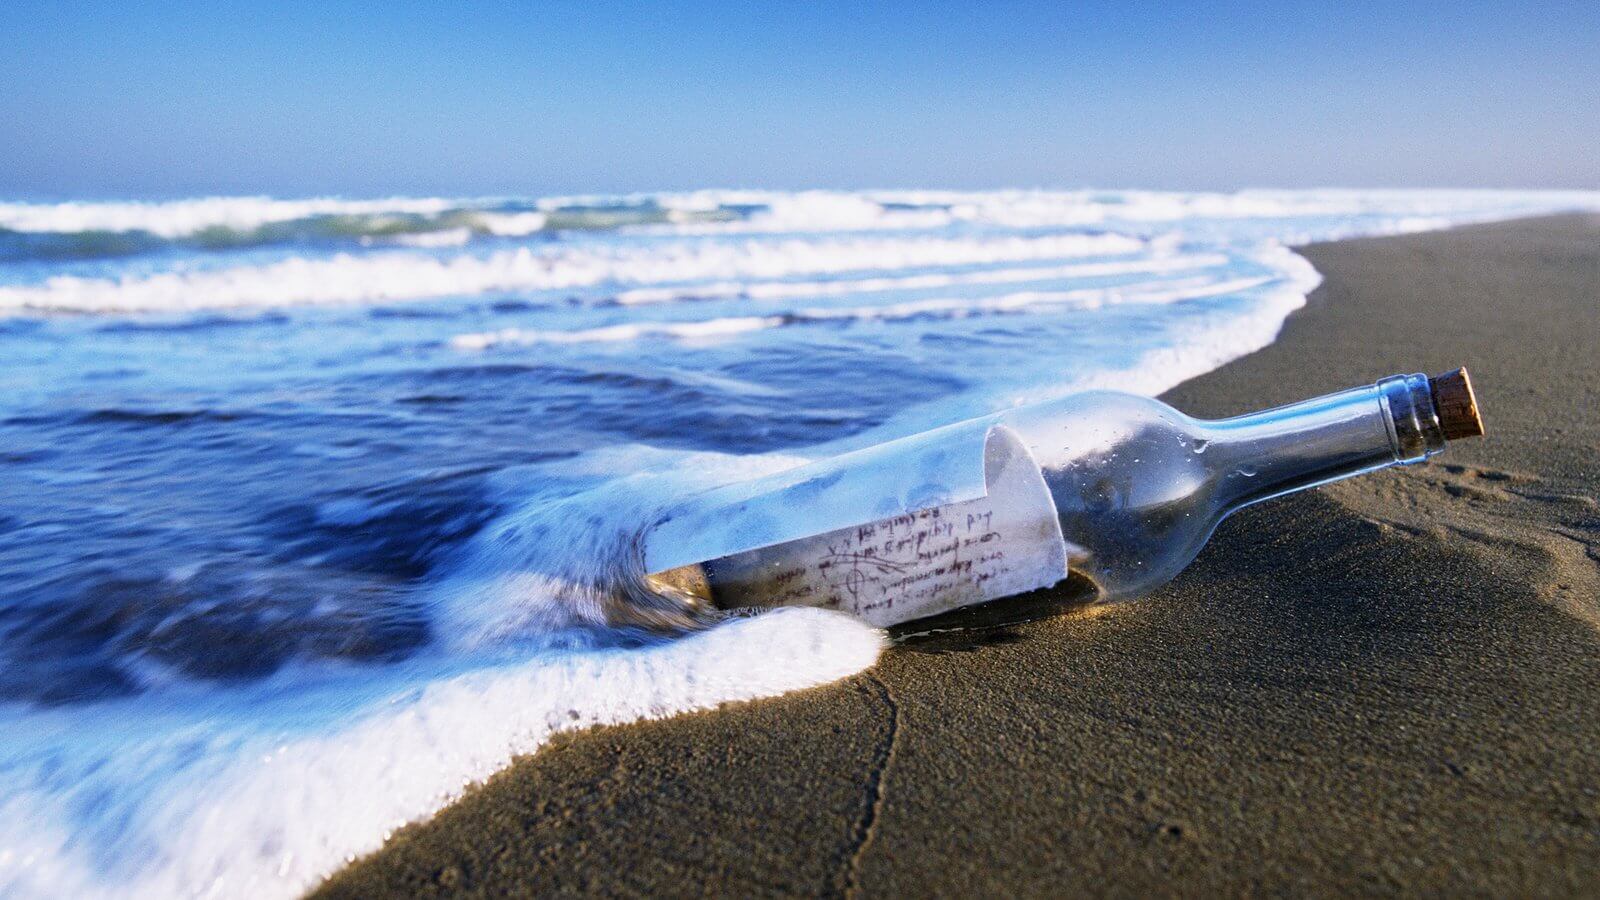 كم يمكن أن تطفو رسالة في زجاجة إذا رميها في المحيط ؟ 